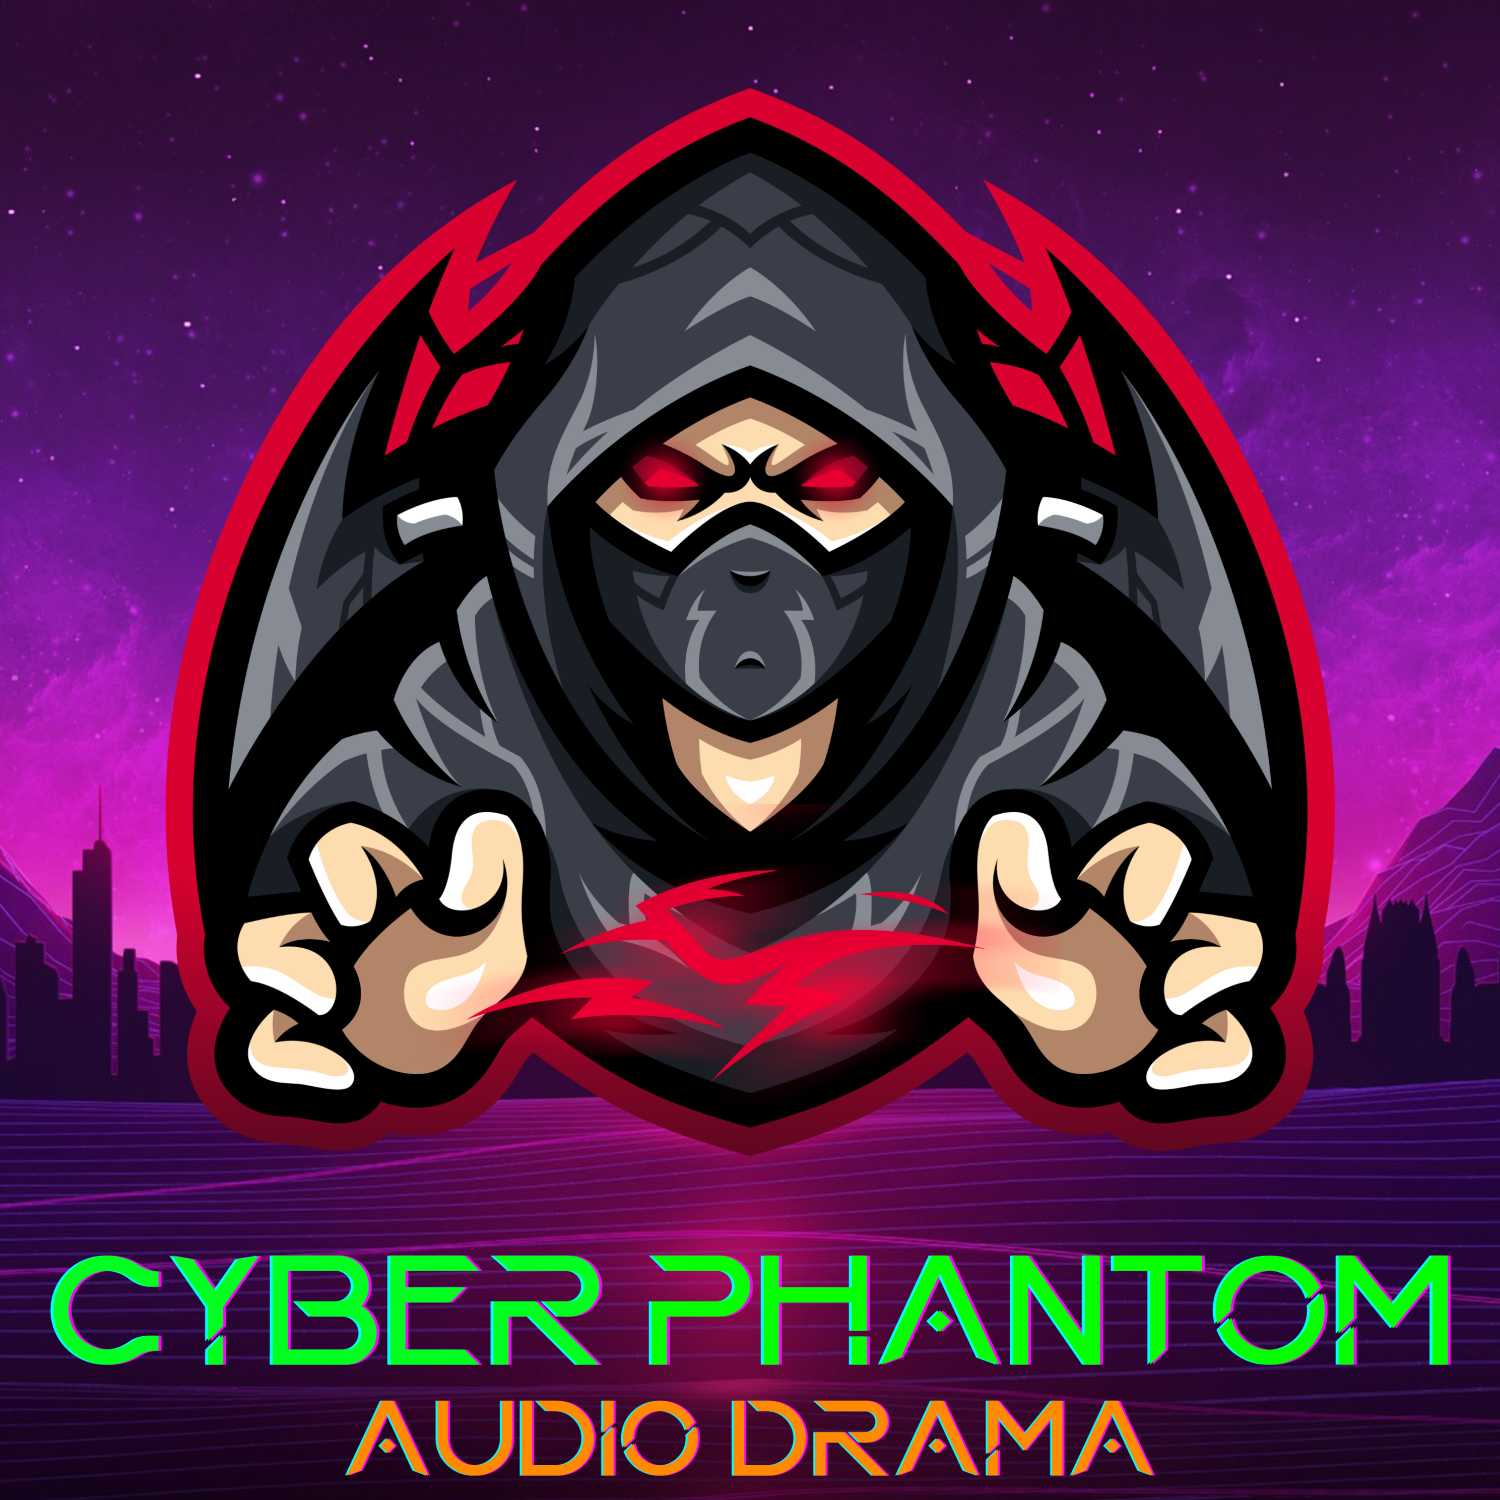 Cyber Phantom